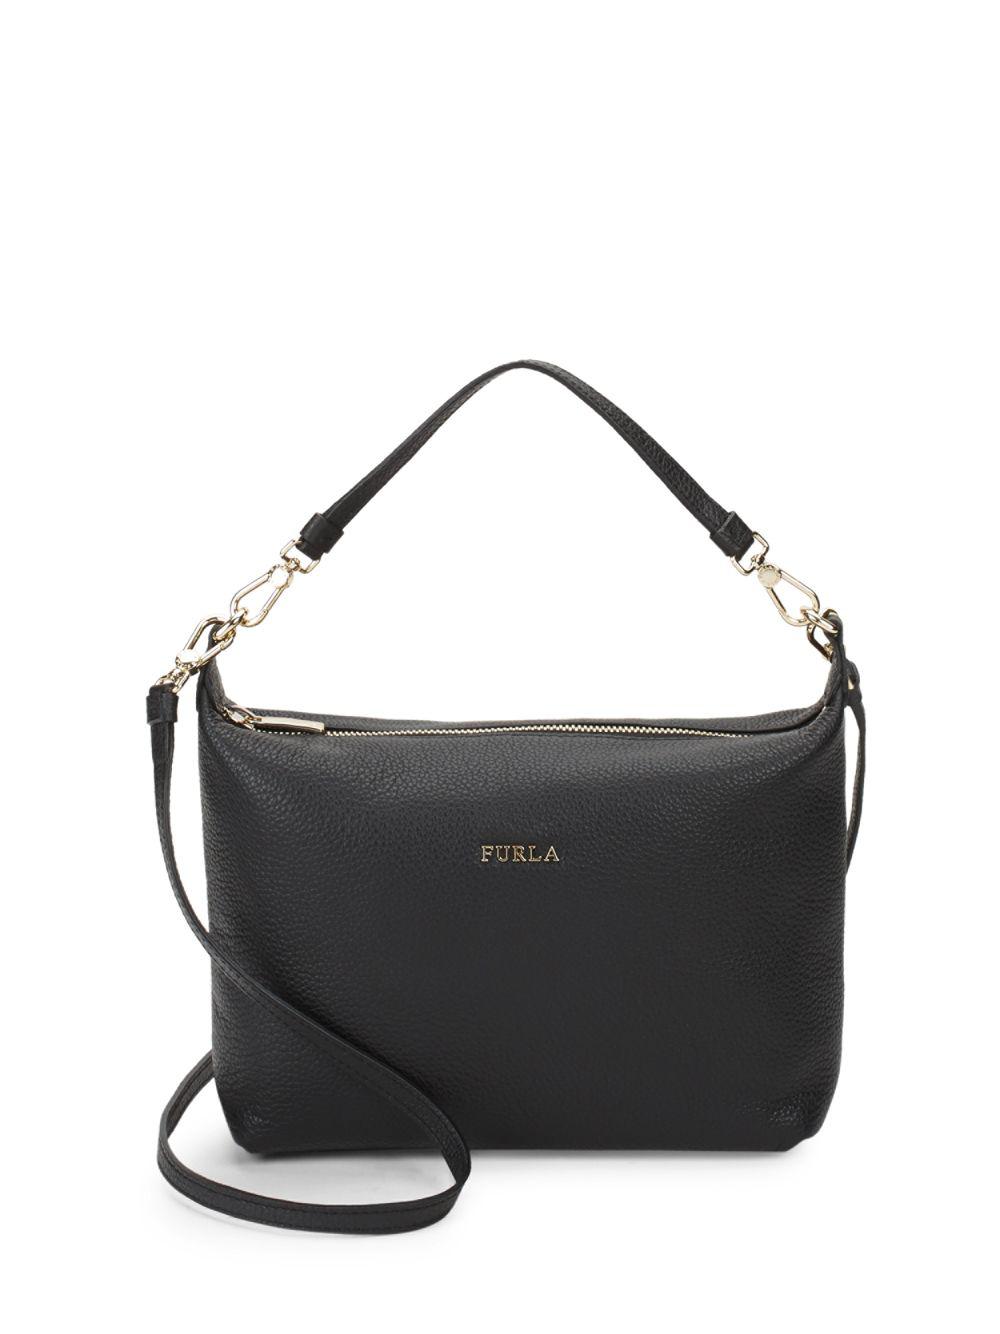 Furla Sophie Xl Leather Crossbody Pouch Bag in Onyx (Black) | Lyst